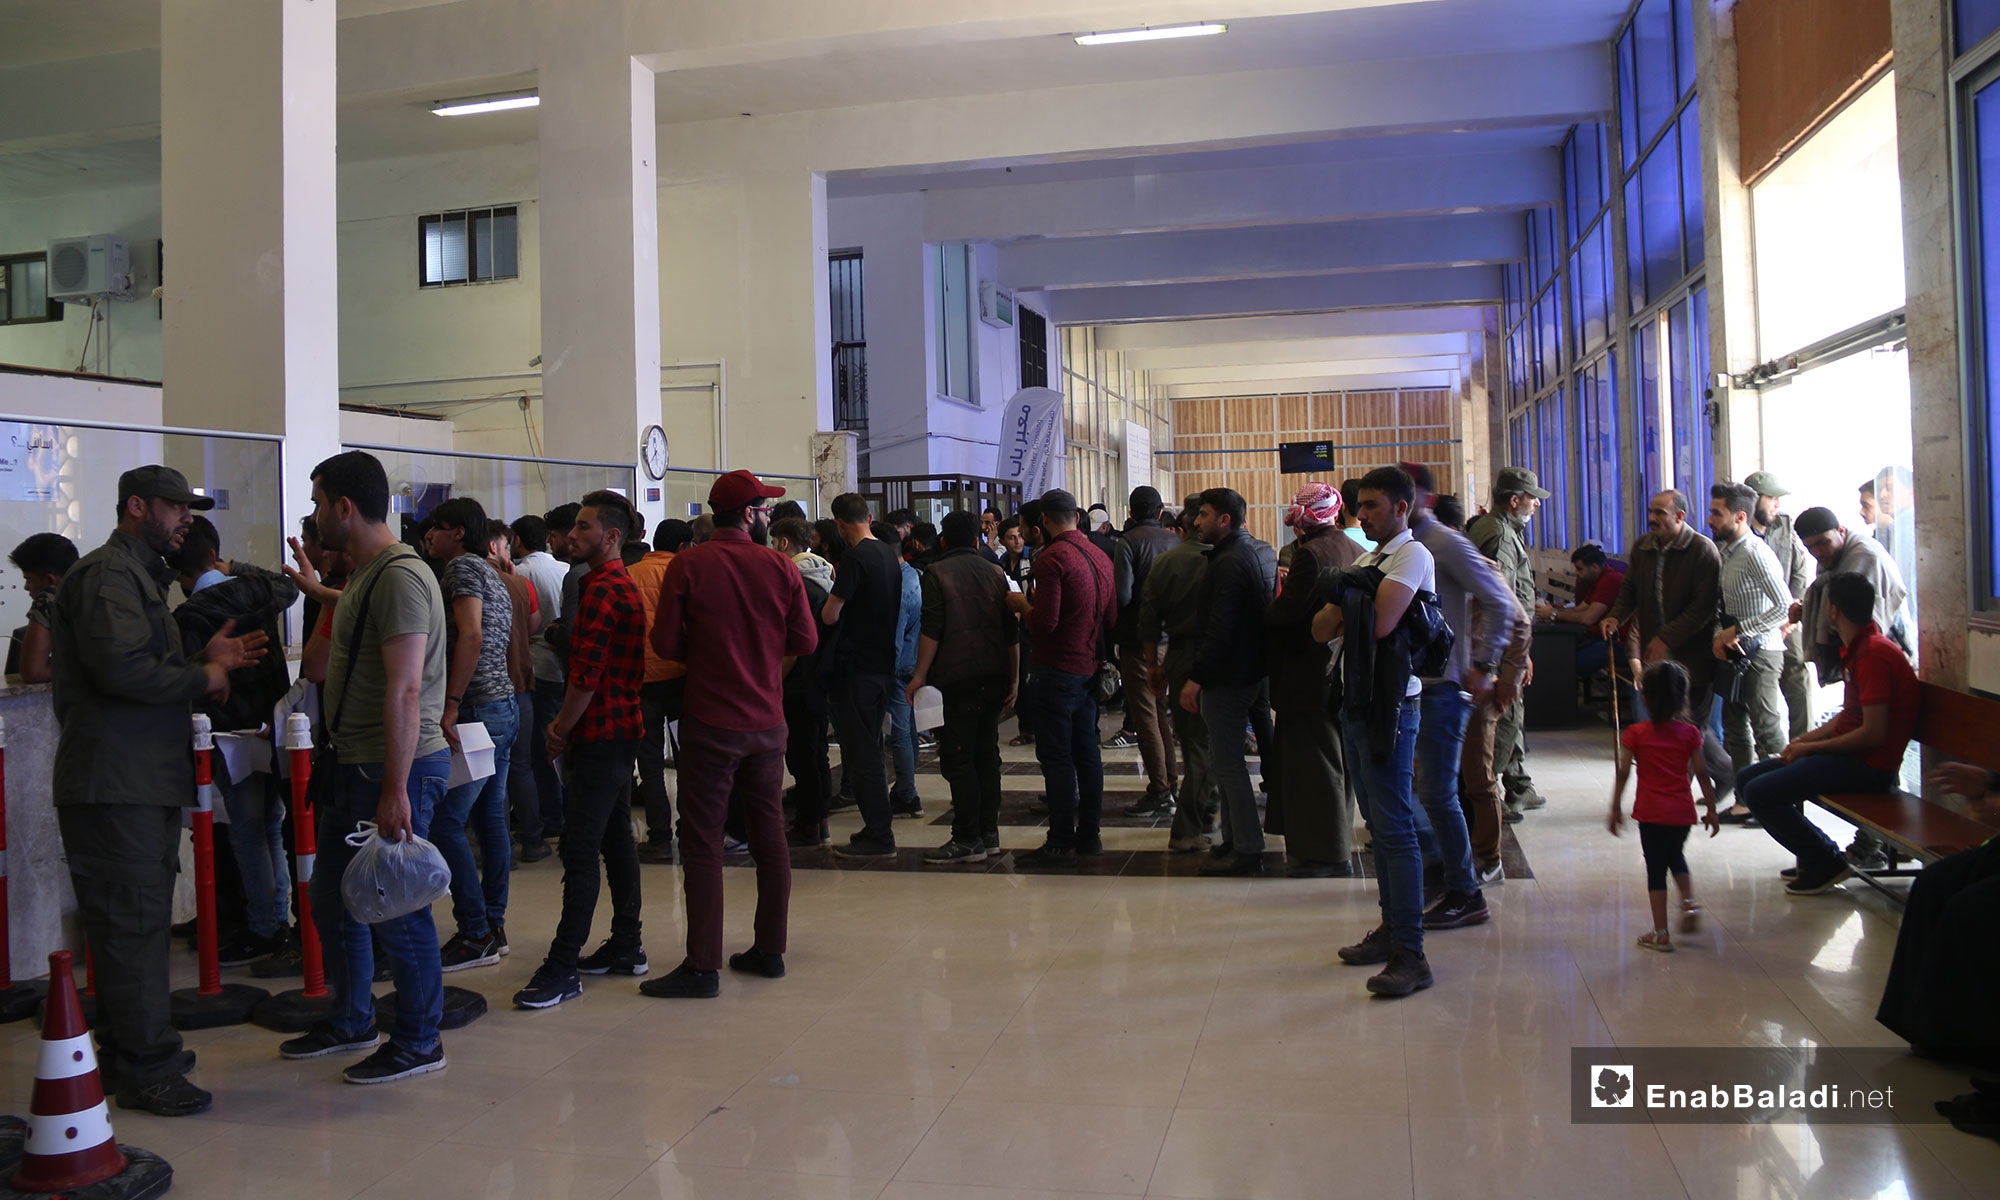 توافد السوريين من تركيا لقضاء إجازة العيد في سوريا عبر معبر باب الهوى الحدودي - 21 من أيار 2019 (عنب بلدي)